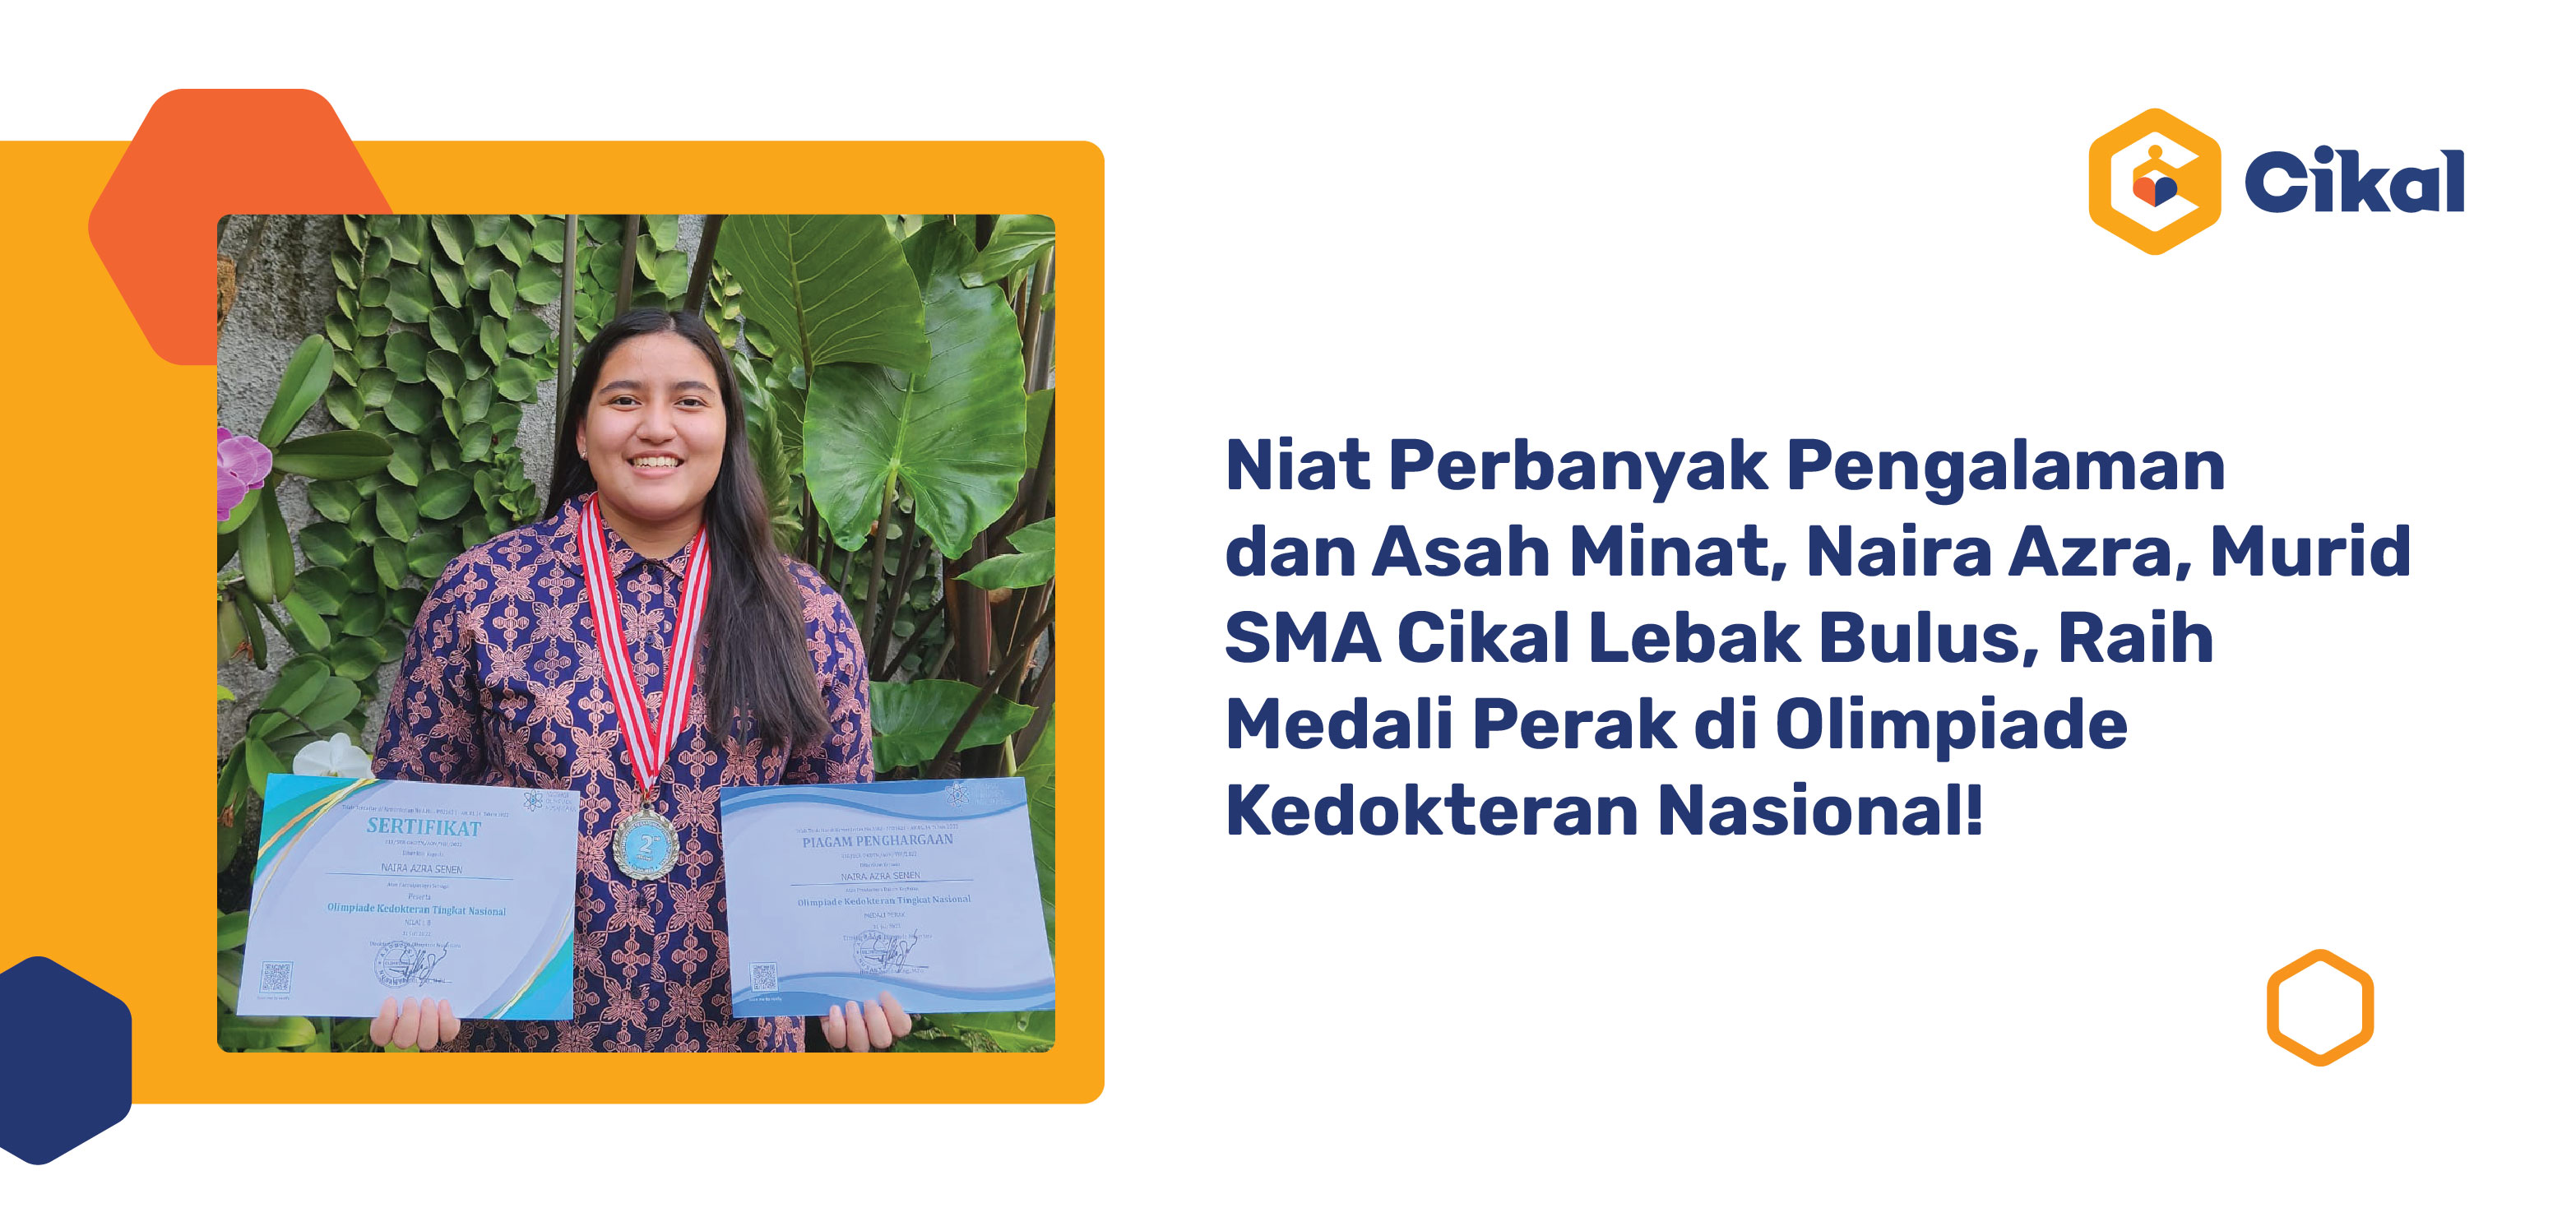 Niat Perbanyak Pengalaman dan Asah Minat, Naira Azra, Murid SMA Cikal Lebak Bulus, Raih Medali Perak di Olimpiade Kedokteran Nasional!